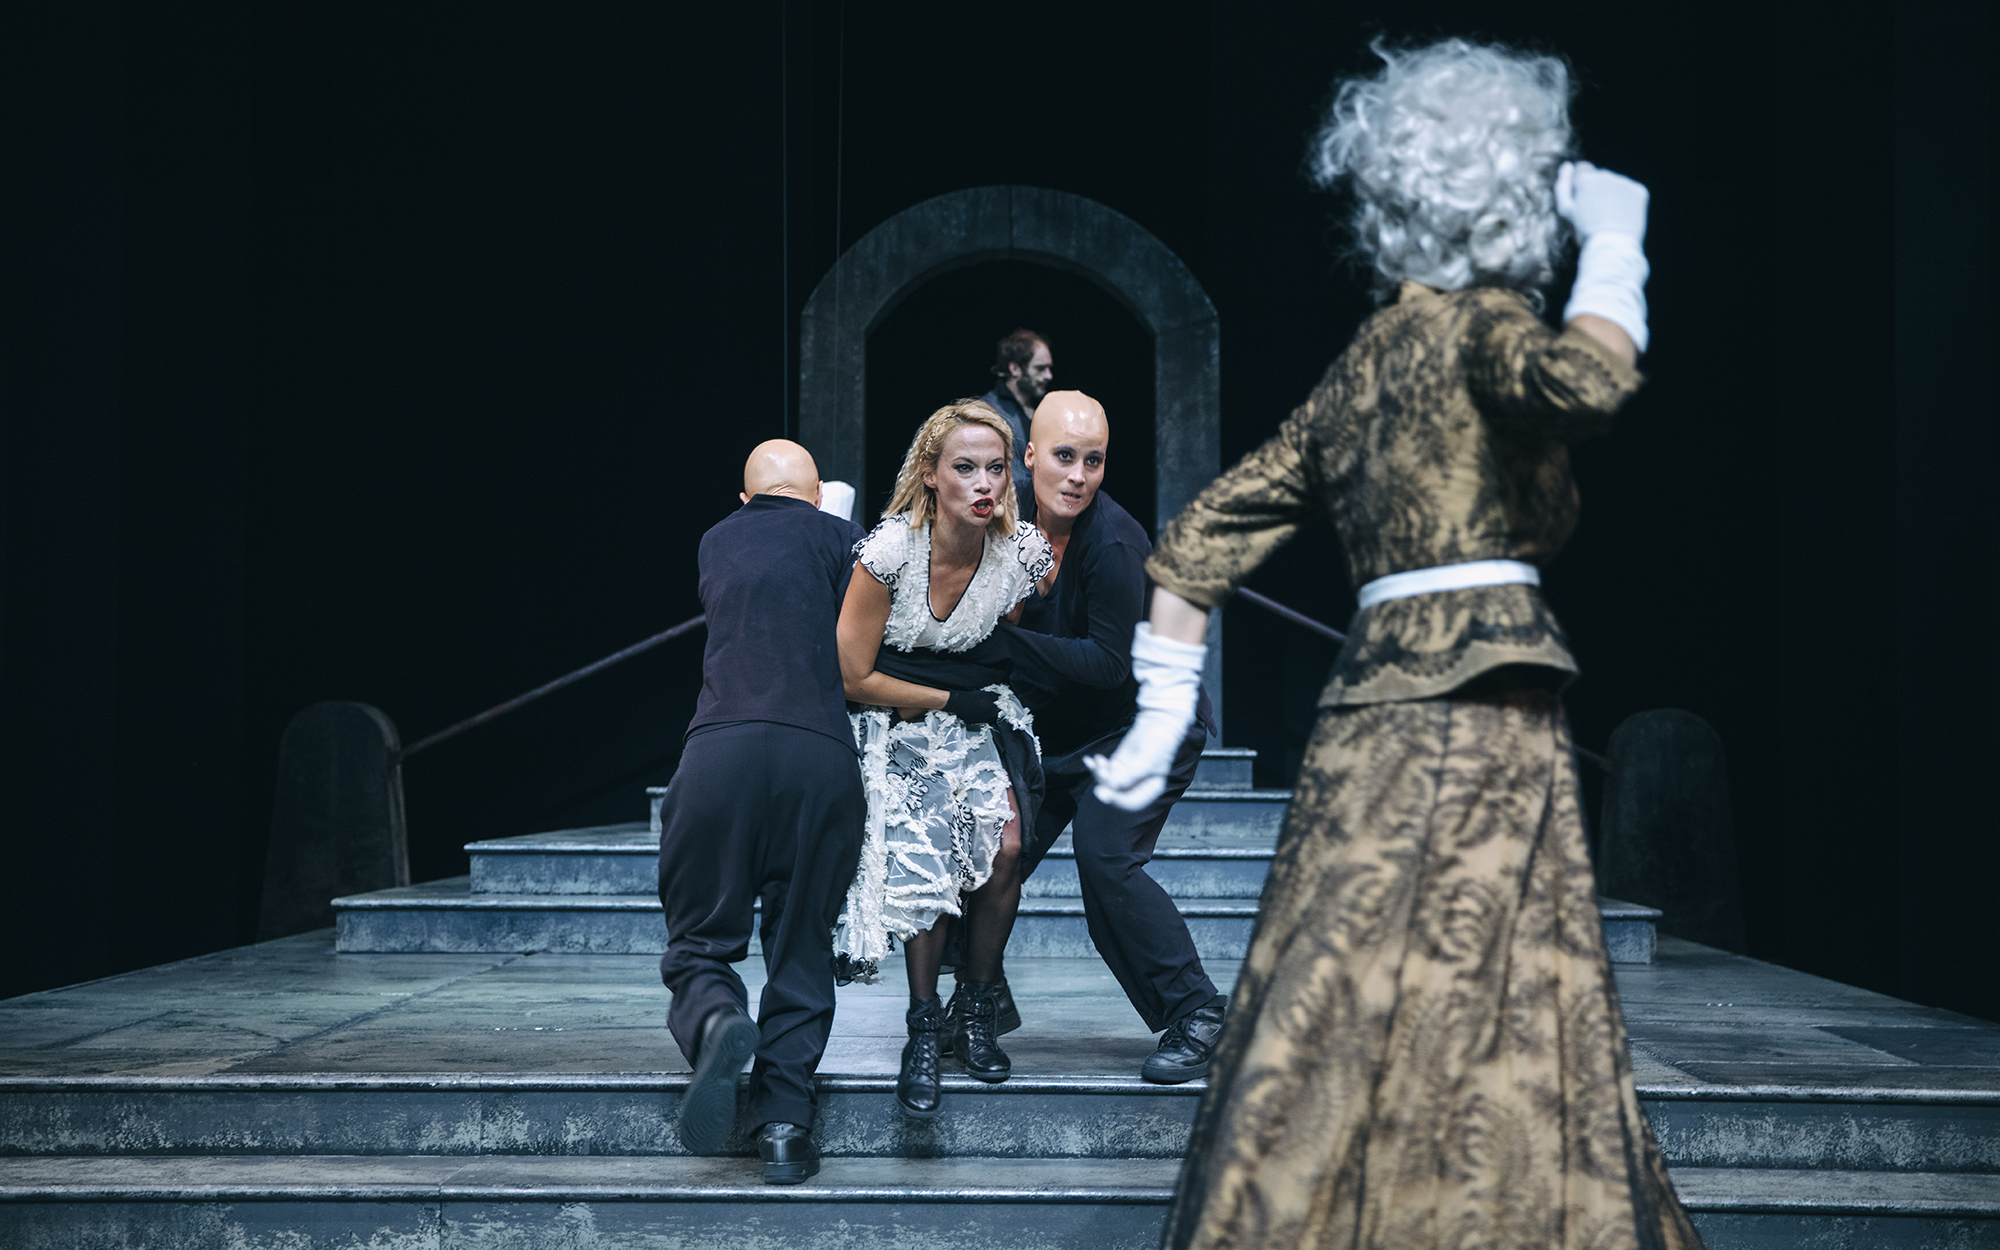 Gargojla (Neža Blažič in Veronika Valdes) vlečeta Turandot (Viktorija Bencik Emeršič) stran od Kraljice mati (Mirjam Korbar), ki žuga za njimi s pestmi.  Avtor fotografije: Peter Giodani.